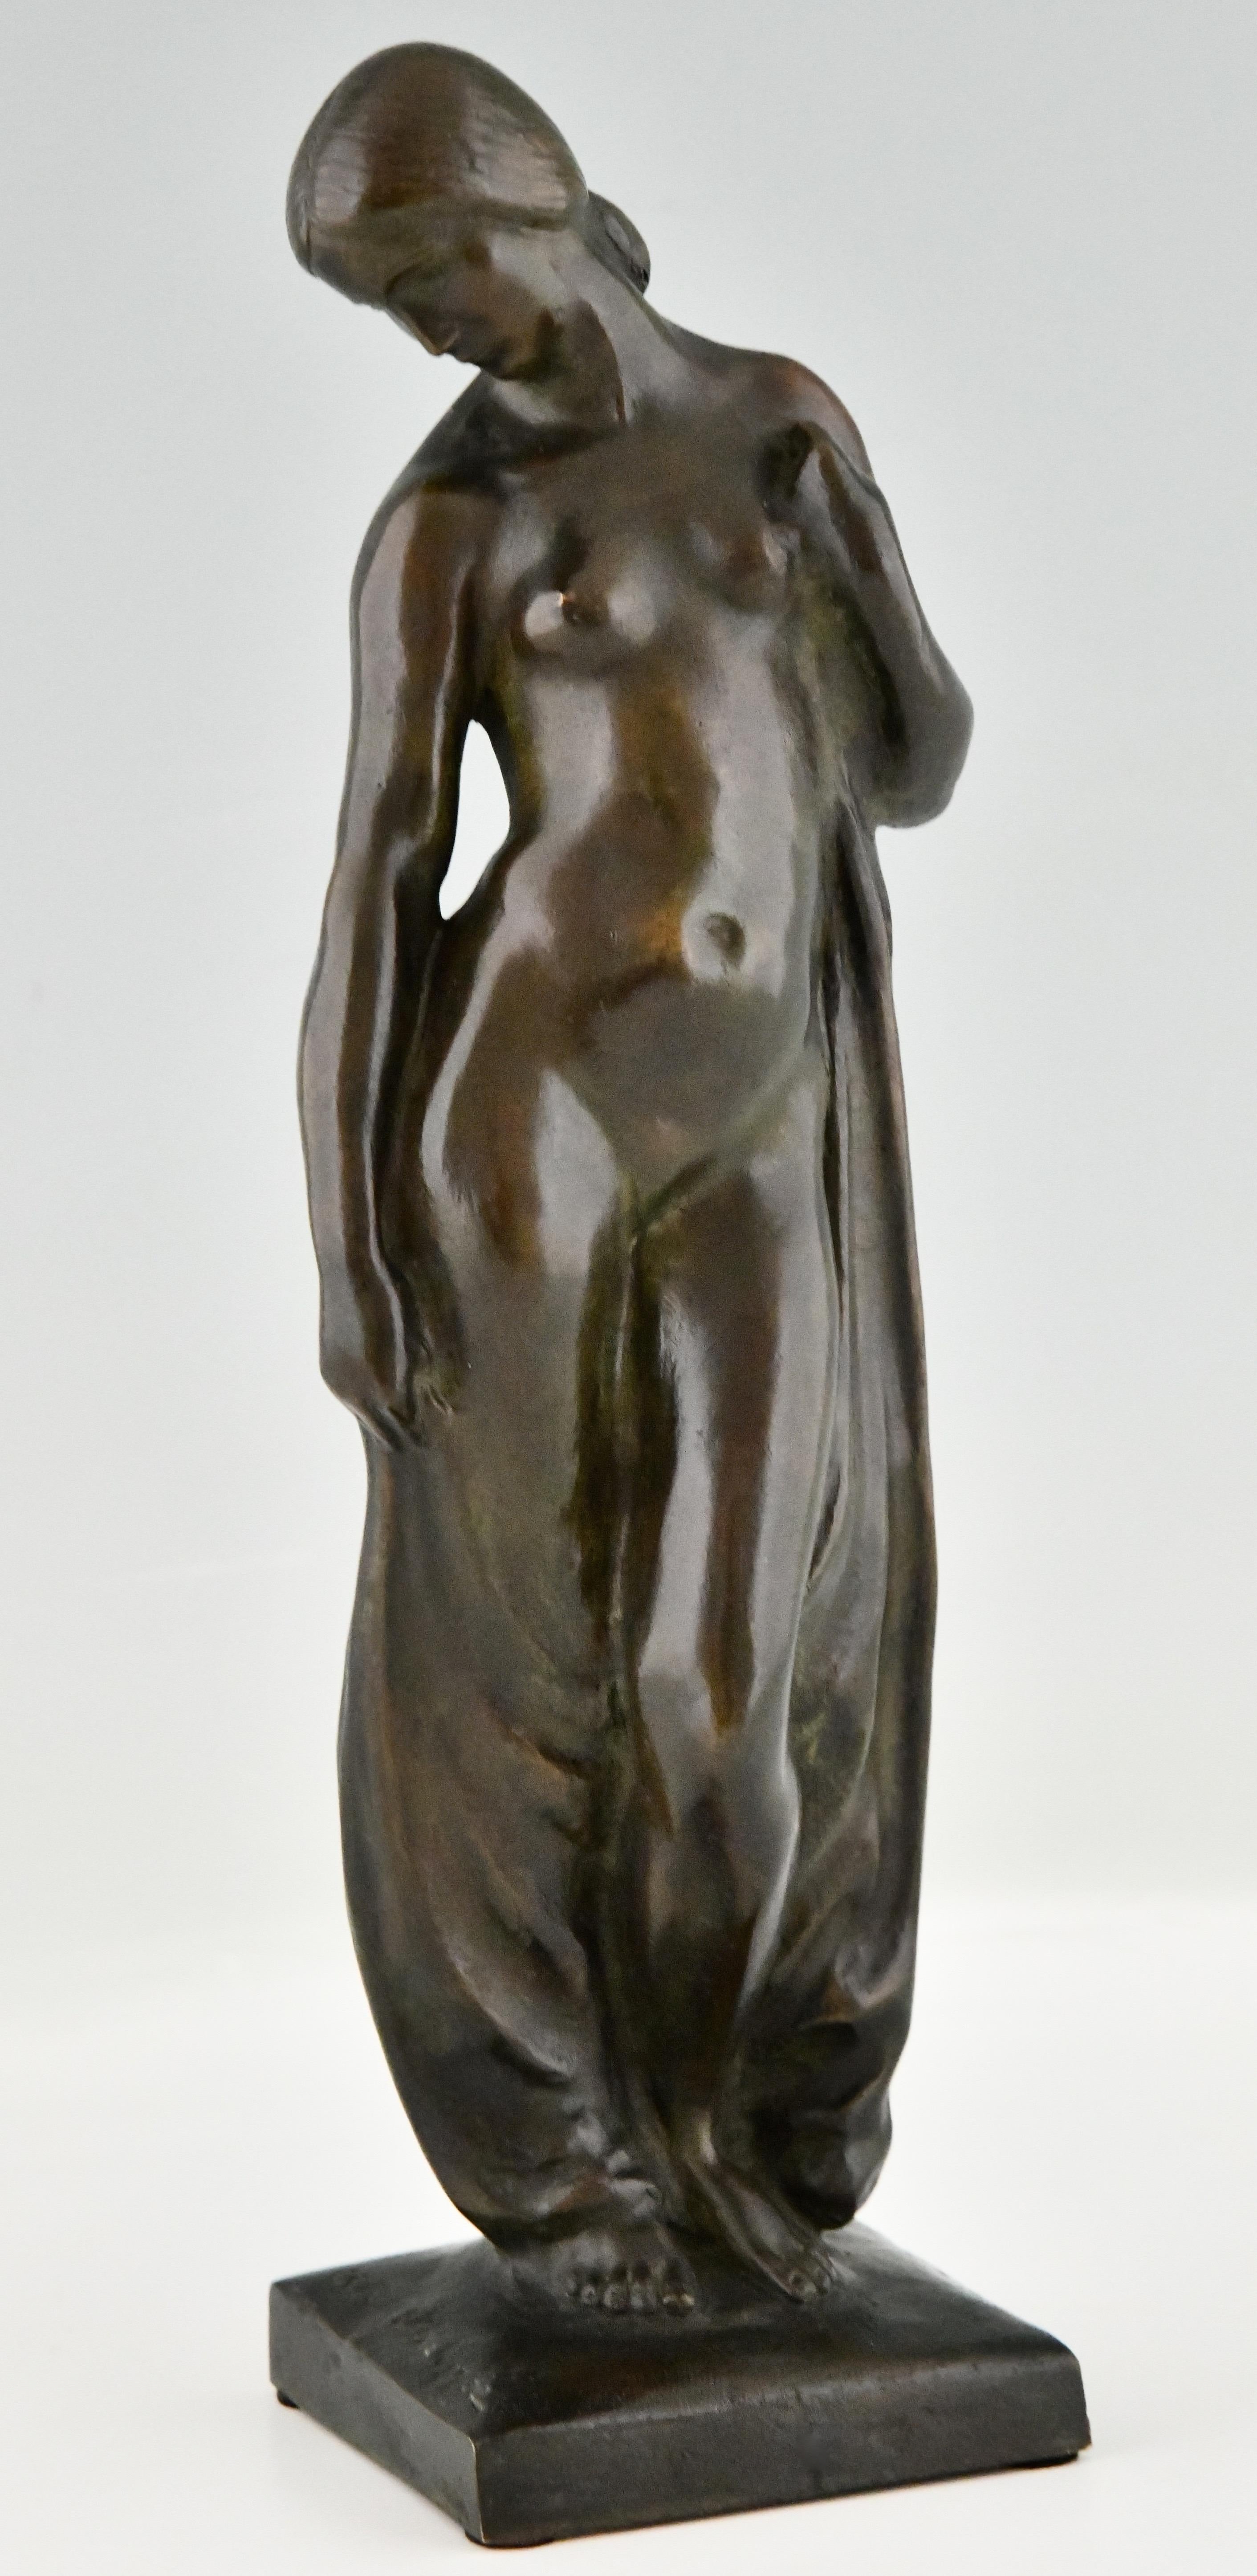 Sculpture Art Déco en bronze nu avec drapé signée par Abel.R. Philippe. 
Avec la marque de fonderie de Meroni Radice, marquée cire perdue, technique de la cire perdue. 
Le bronze a une belle patine. 
France 1925.